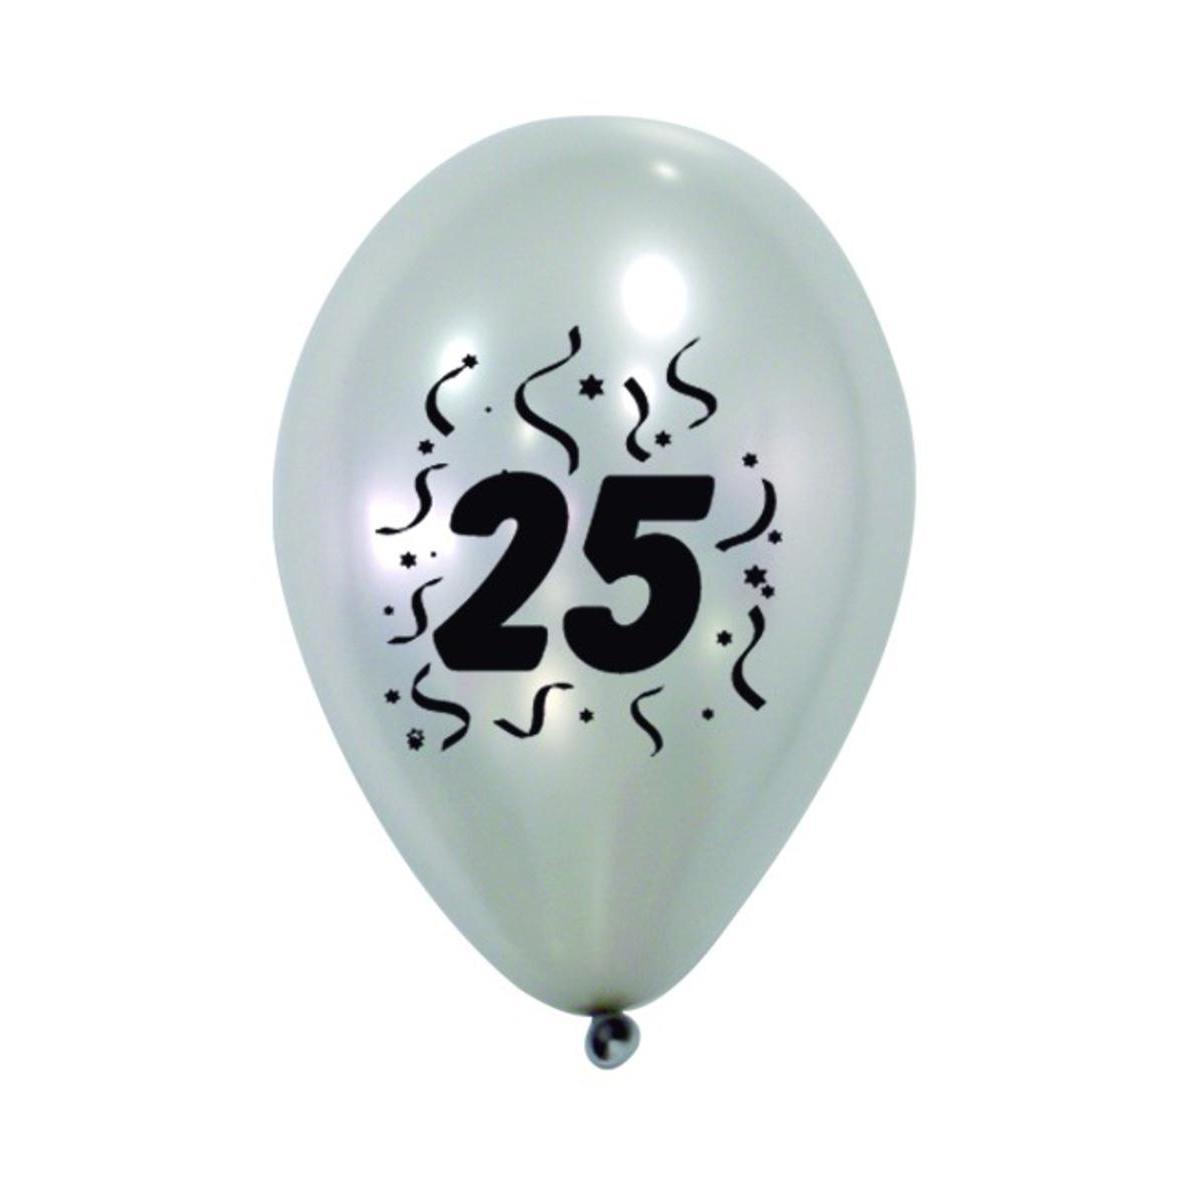 8 ballons nacrés imprimés 25 ans - Latex - ø 28 cm - Argent